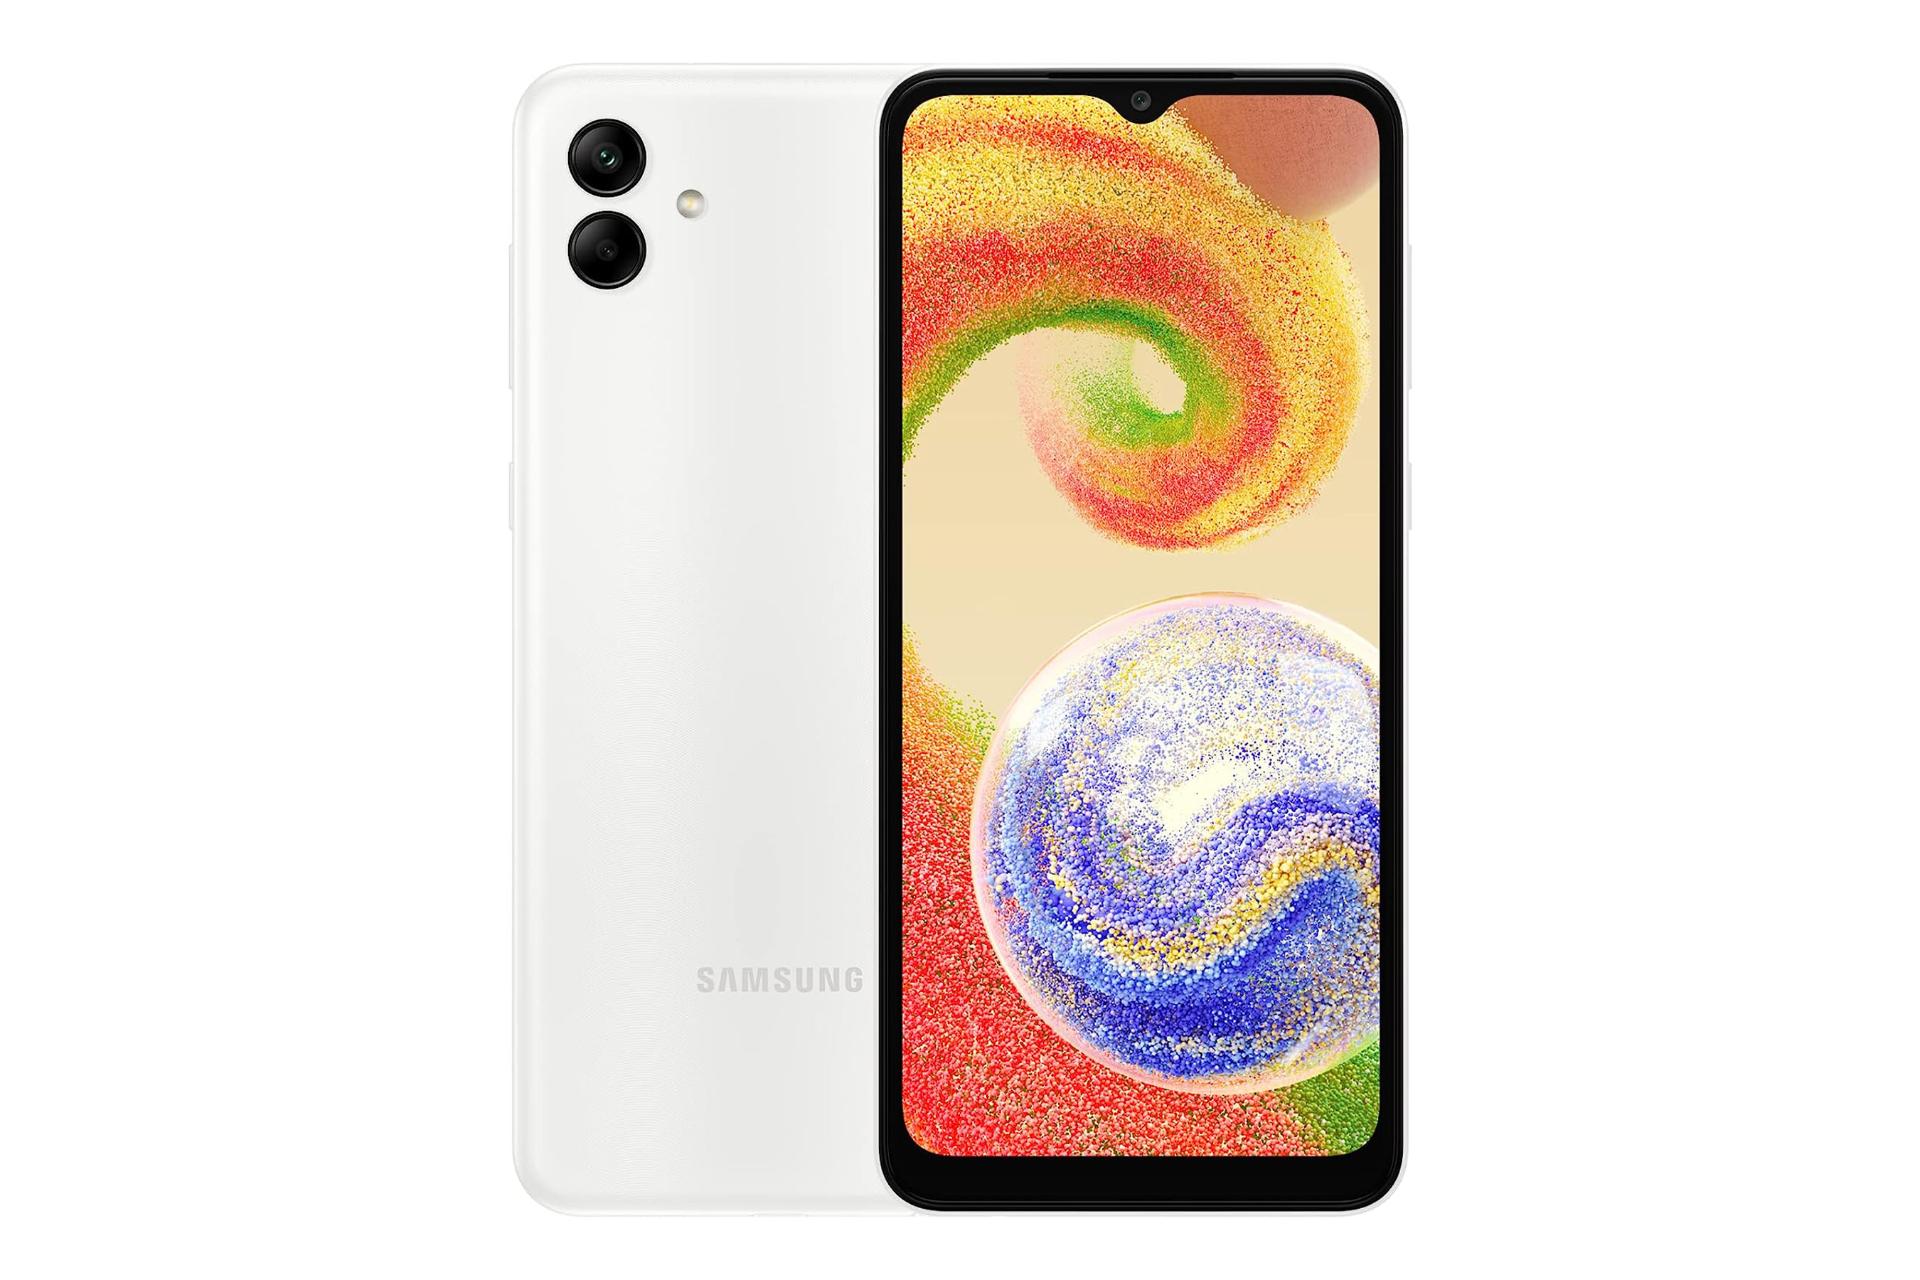 نمای کلی گوشی موبایل گلکسی A04 سامسونگ / Samsung Galaxy A04 با نمایشگر روشن و نمایش لوگو و دوربین رنگ سفید